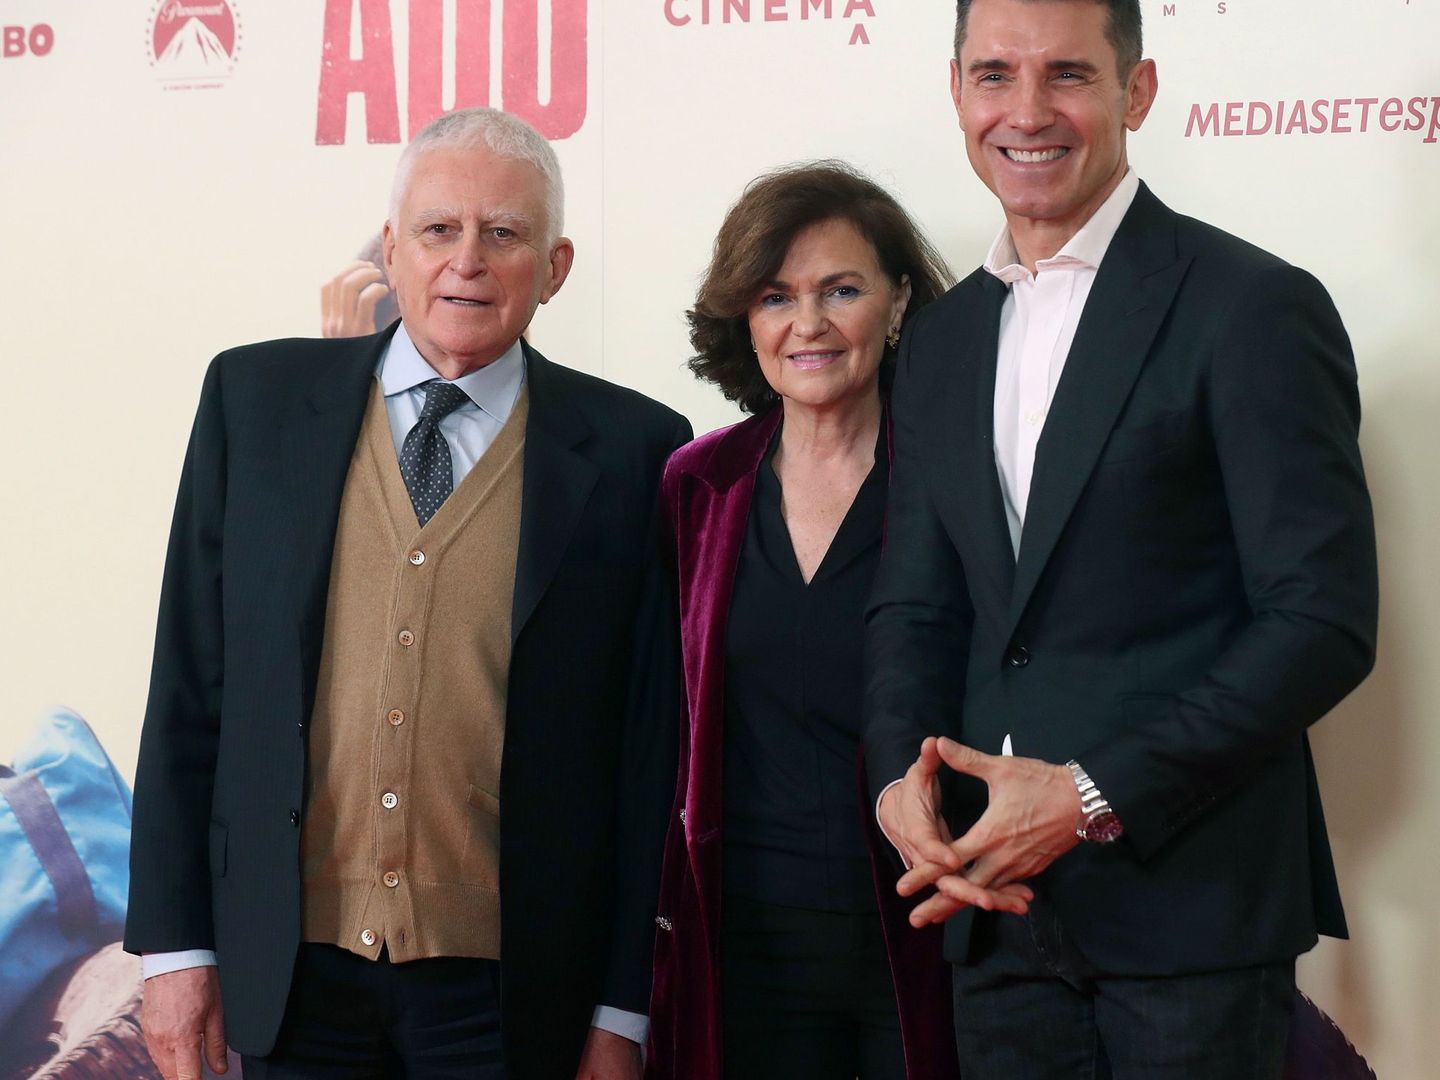 Paolo Vasile, con la ministra Carmen Calvo y Jesús Vázquez, el pasado martes, en el estreno de 'Adú'.